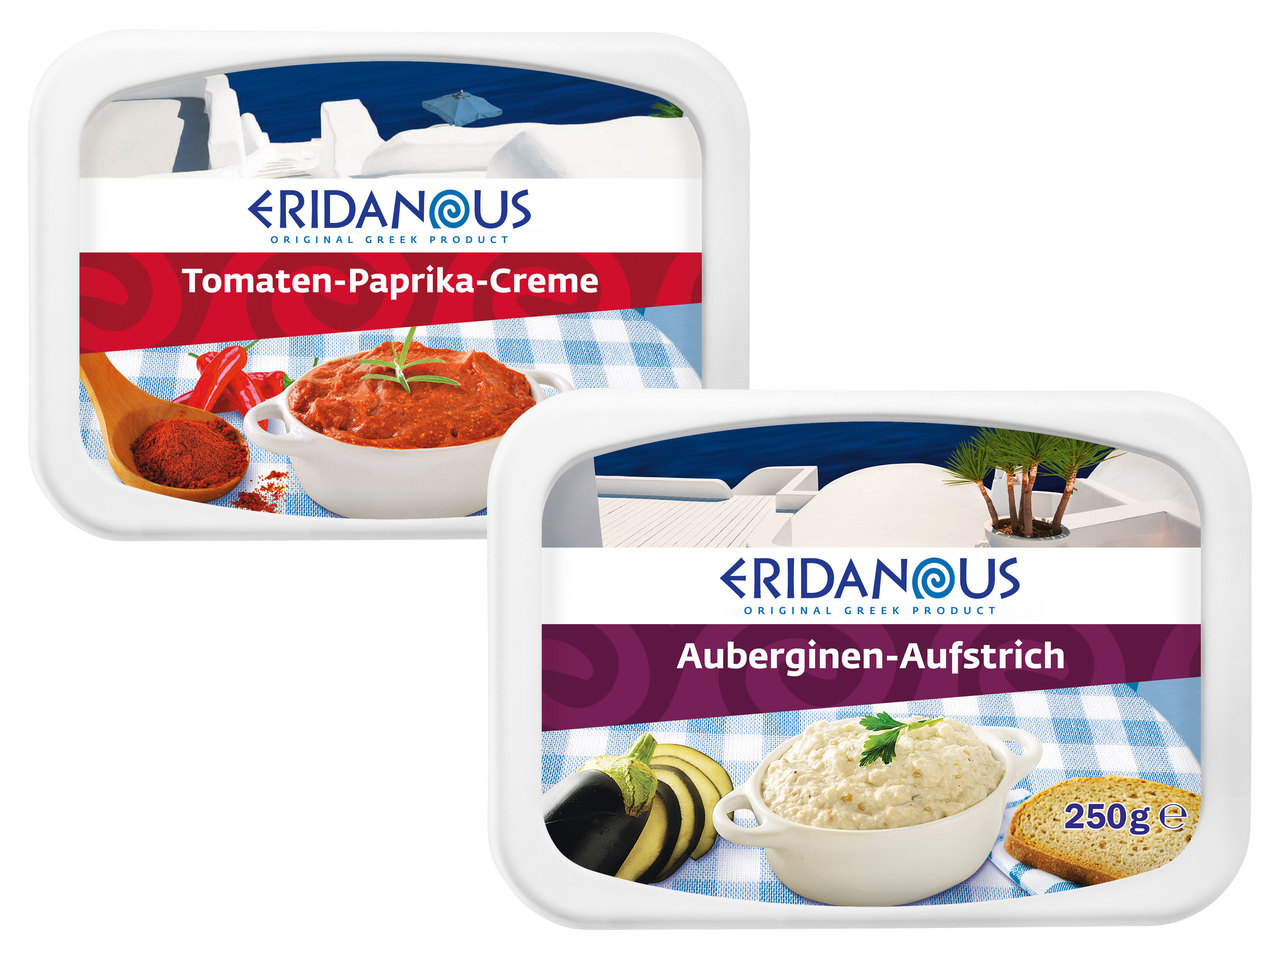 ERIDANOUS Auberginen-Aufstrich/Tomaten-Paprika-Creme